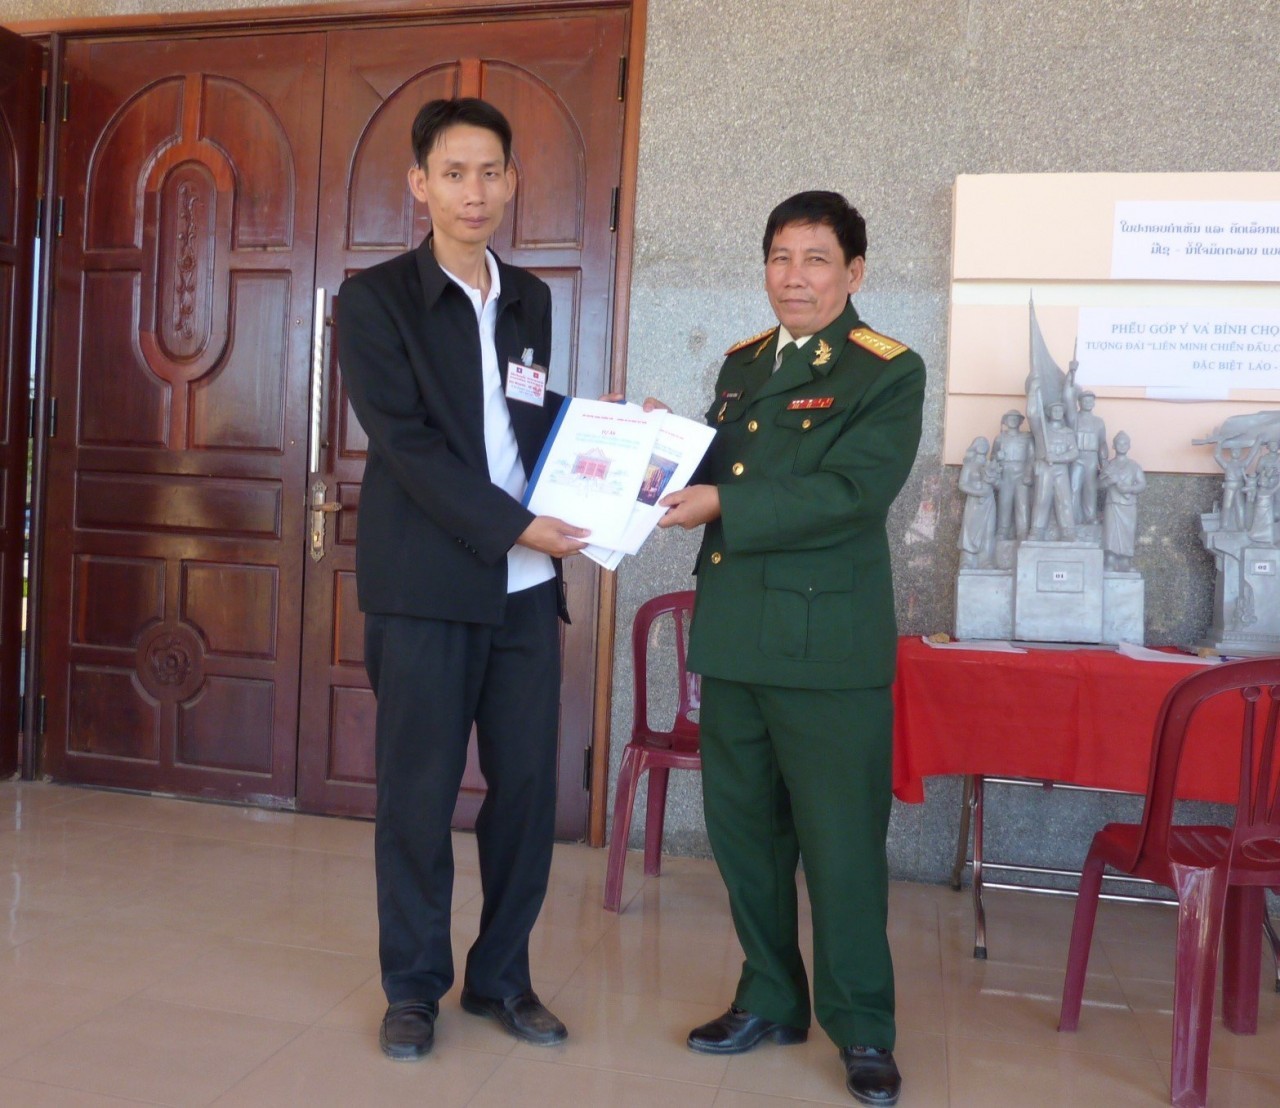 Hành trình khảo sát các di tích trên con đường liên minh chiến đấu Việt - Lào